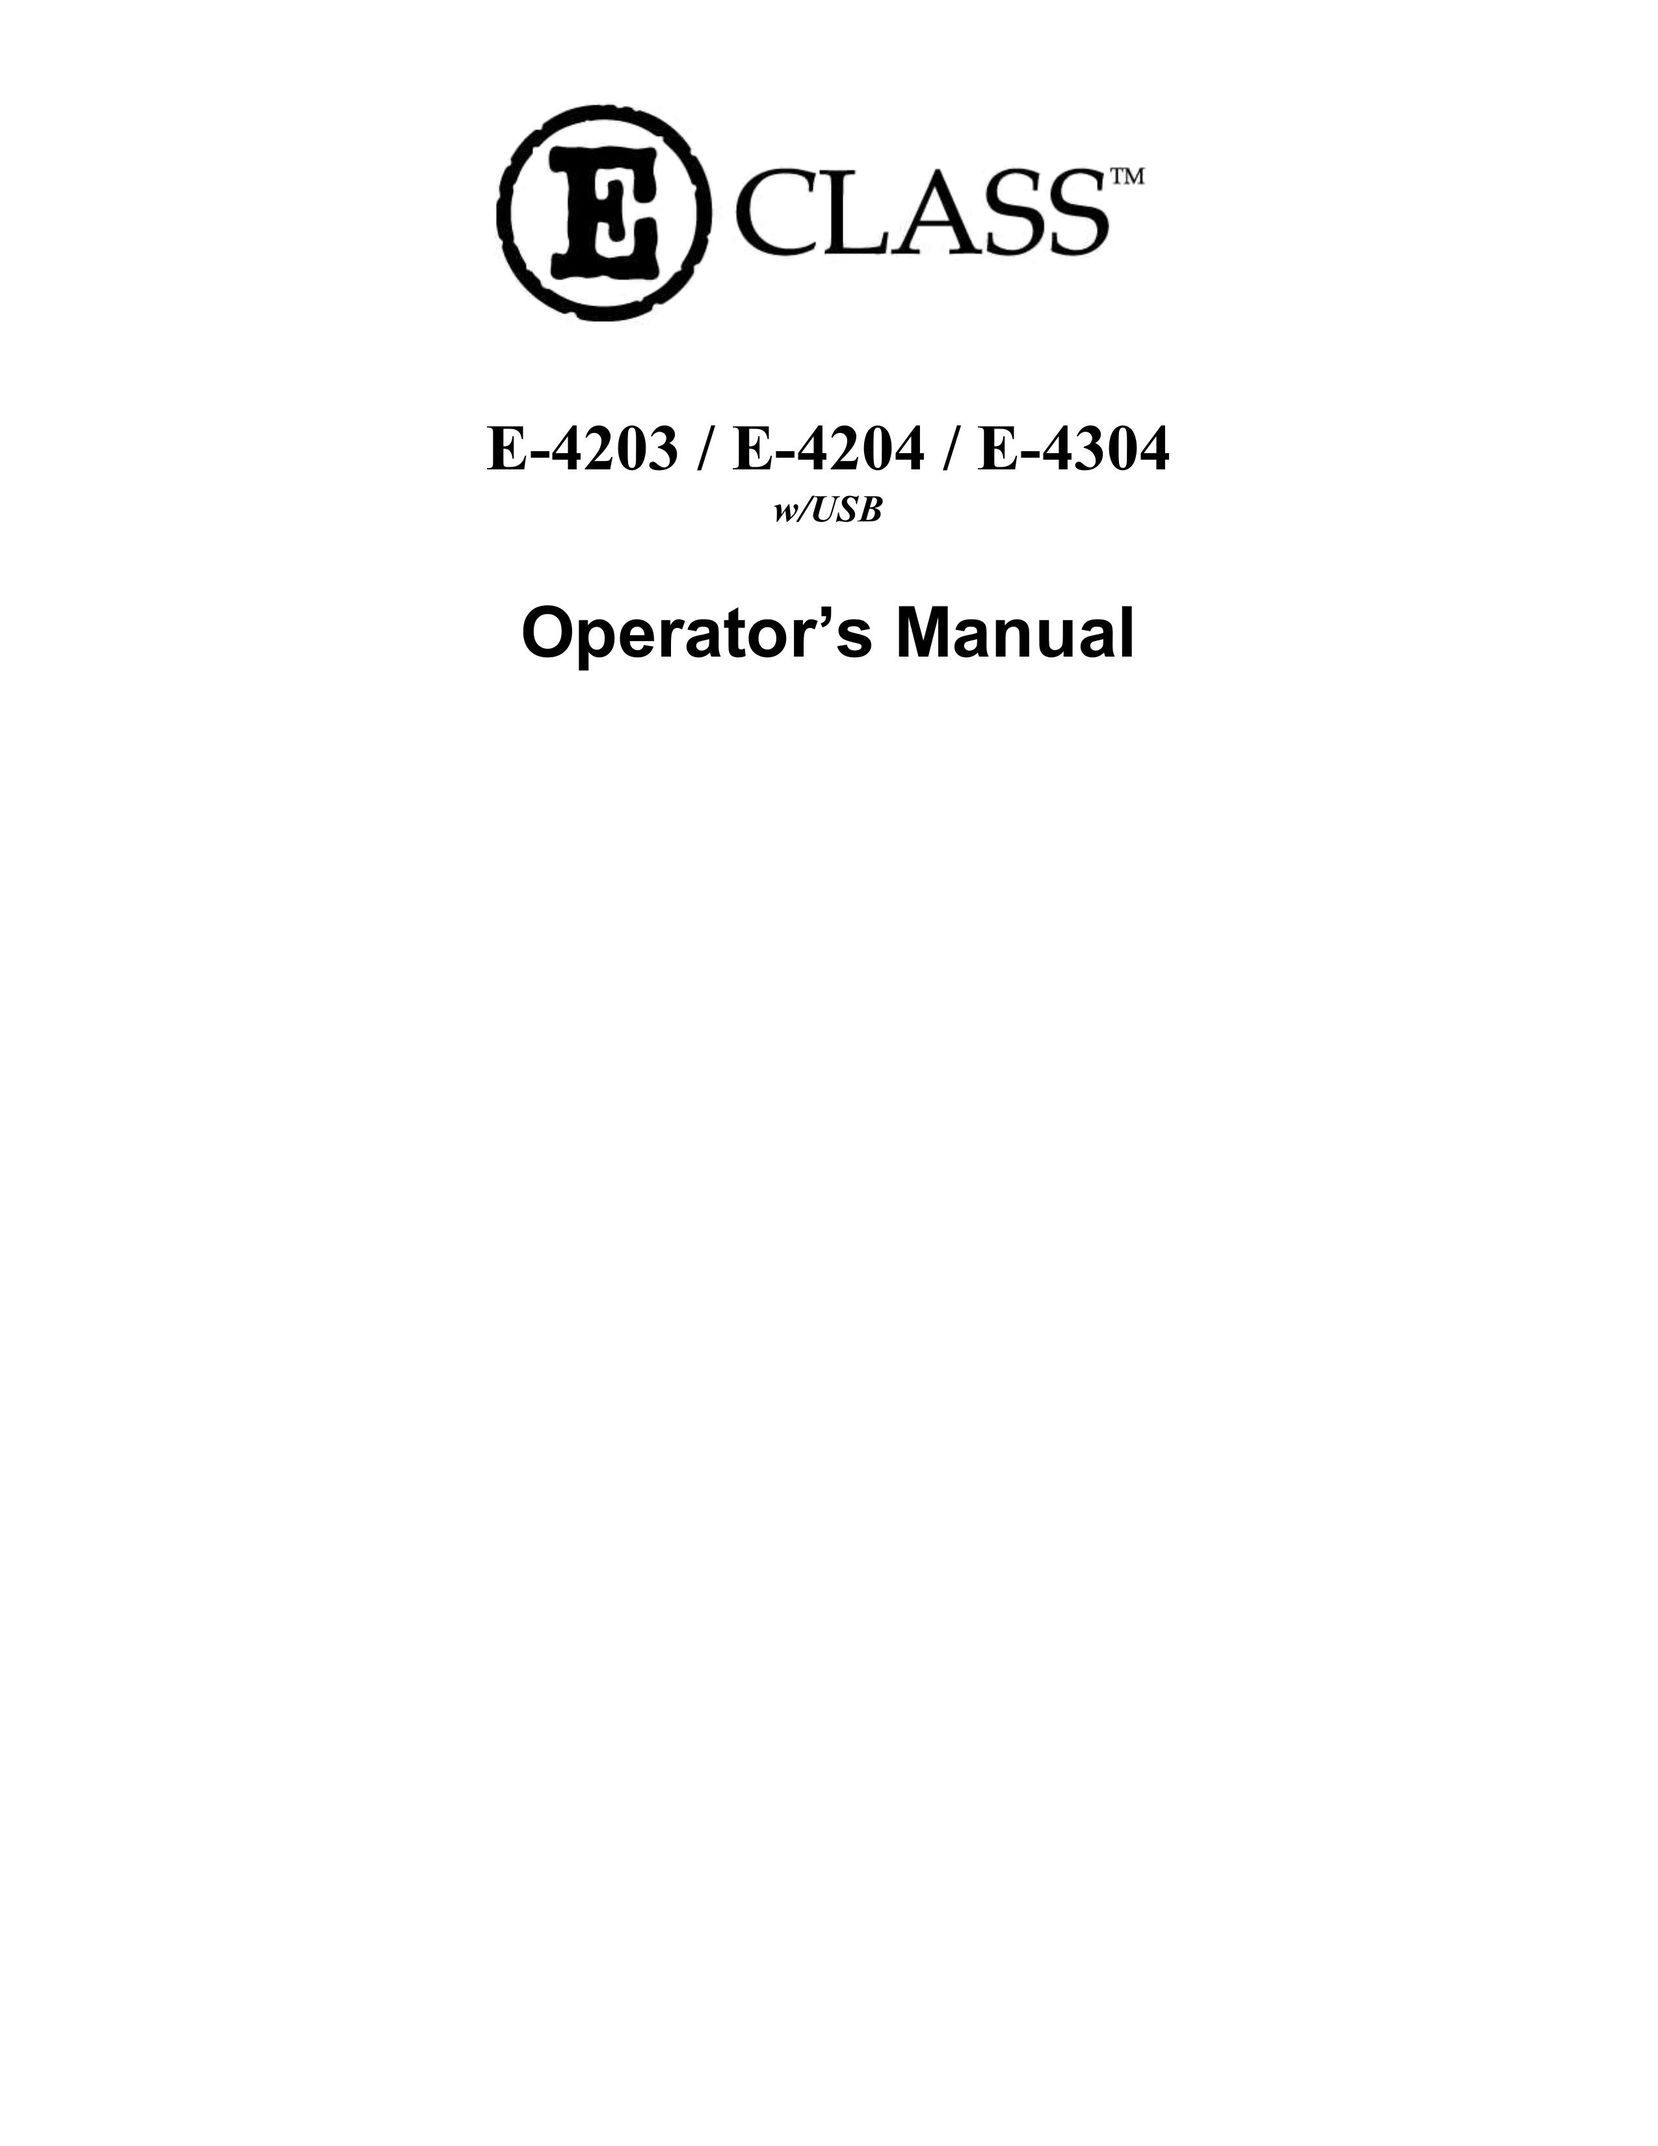 Datamax E-4203 Printer User Manual